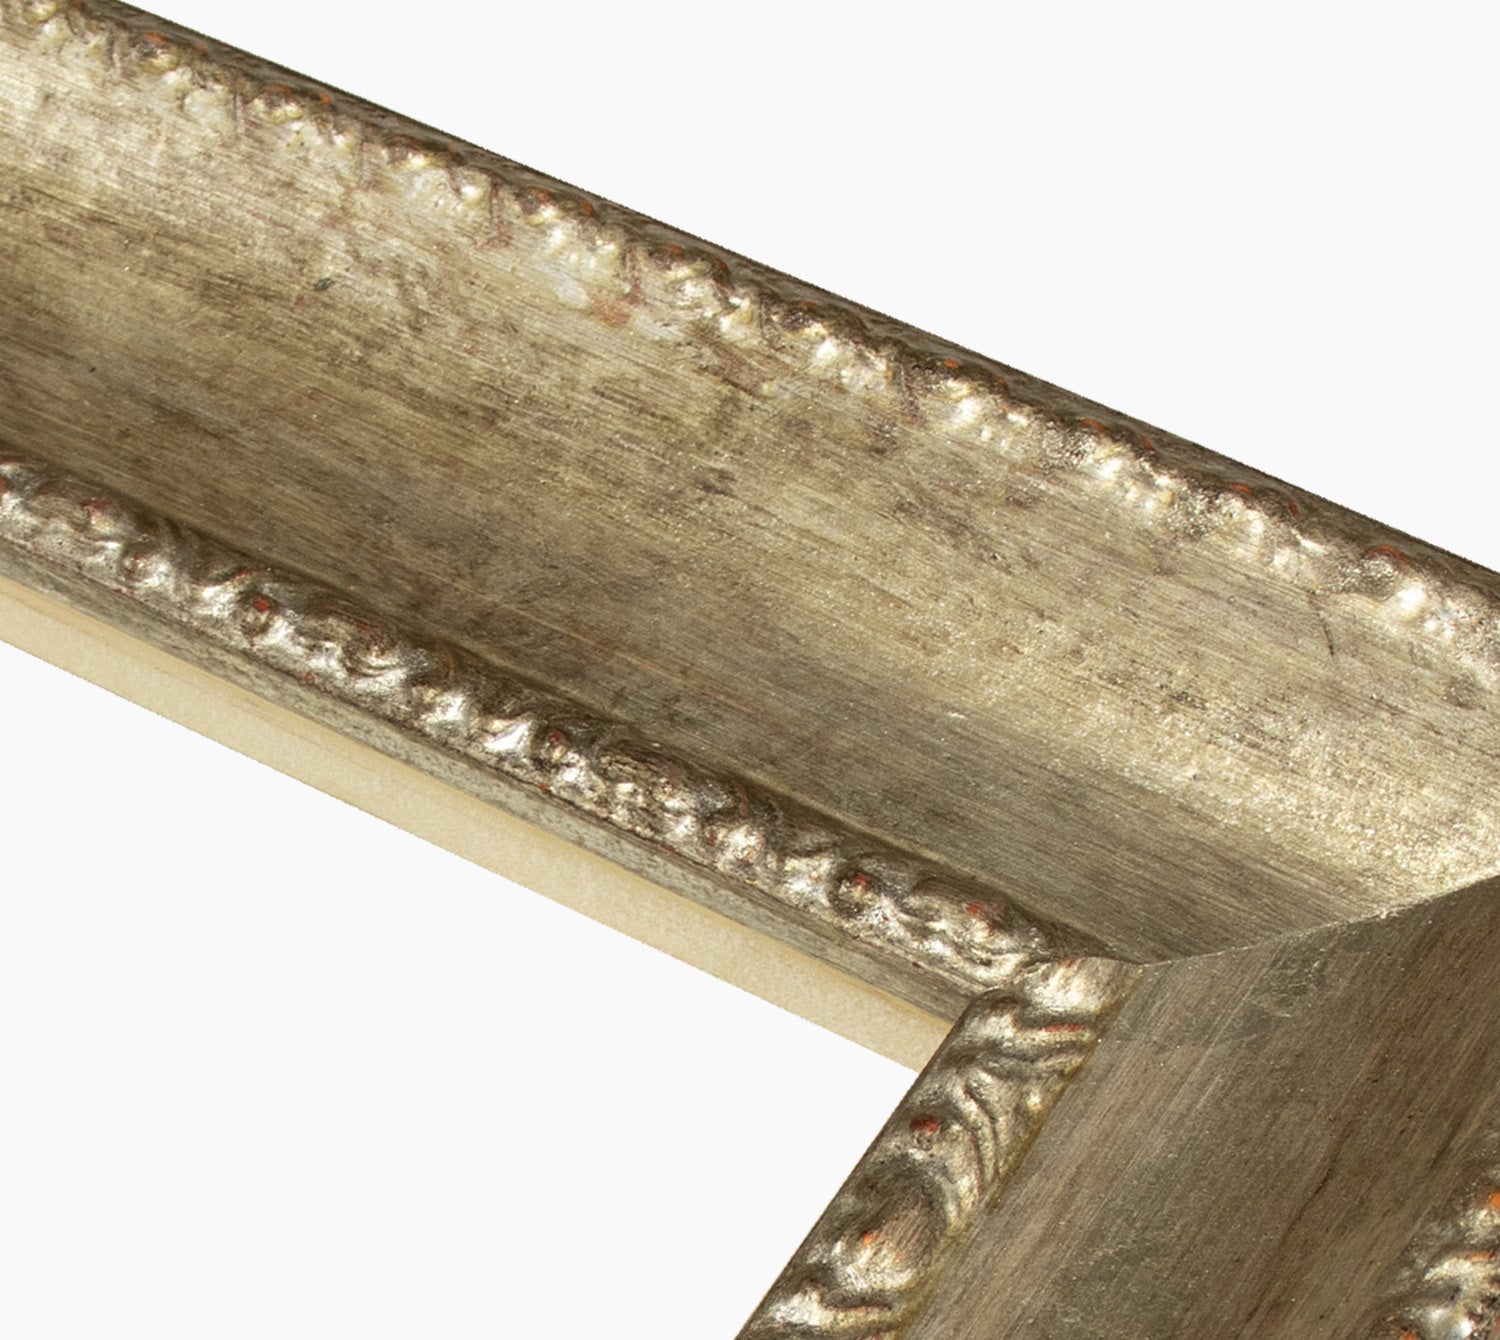 620.231 cadre en bois à la feuille d'argent antique mesure de profil 65x48 mm Lombarda cornici S.n.c.